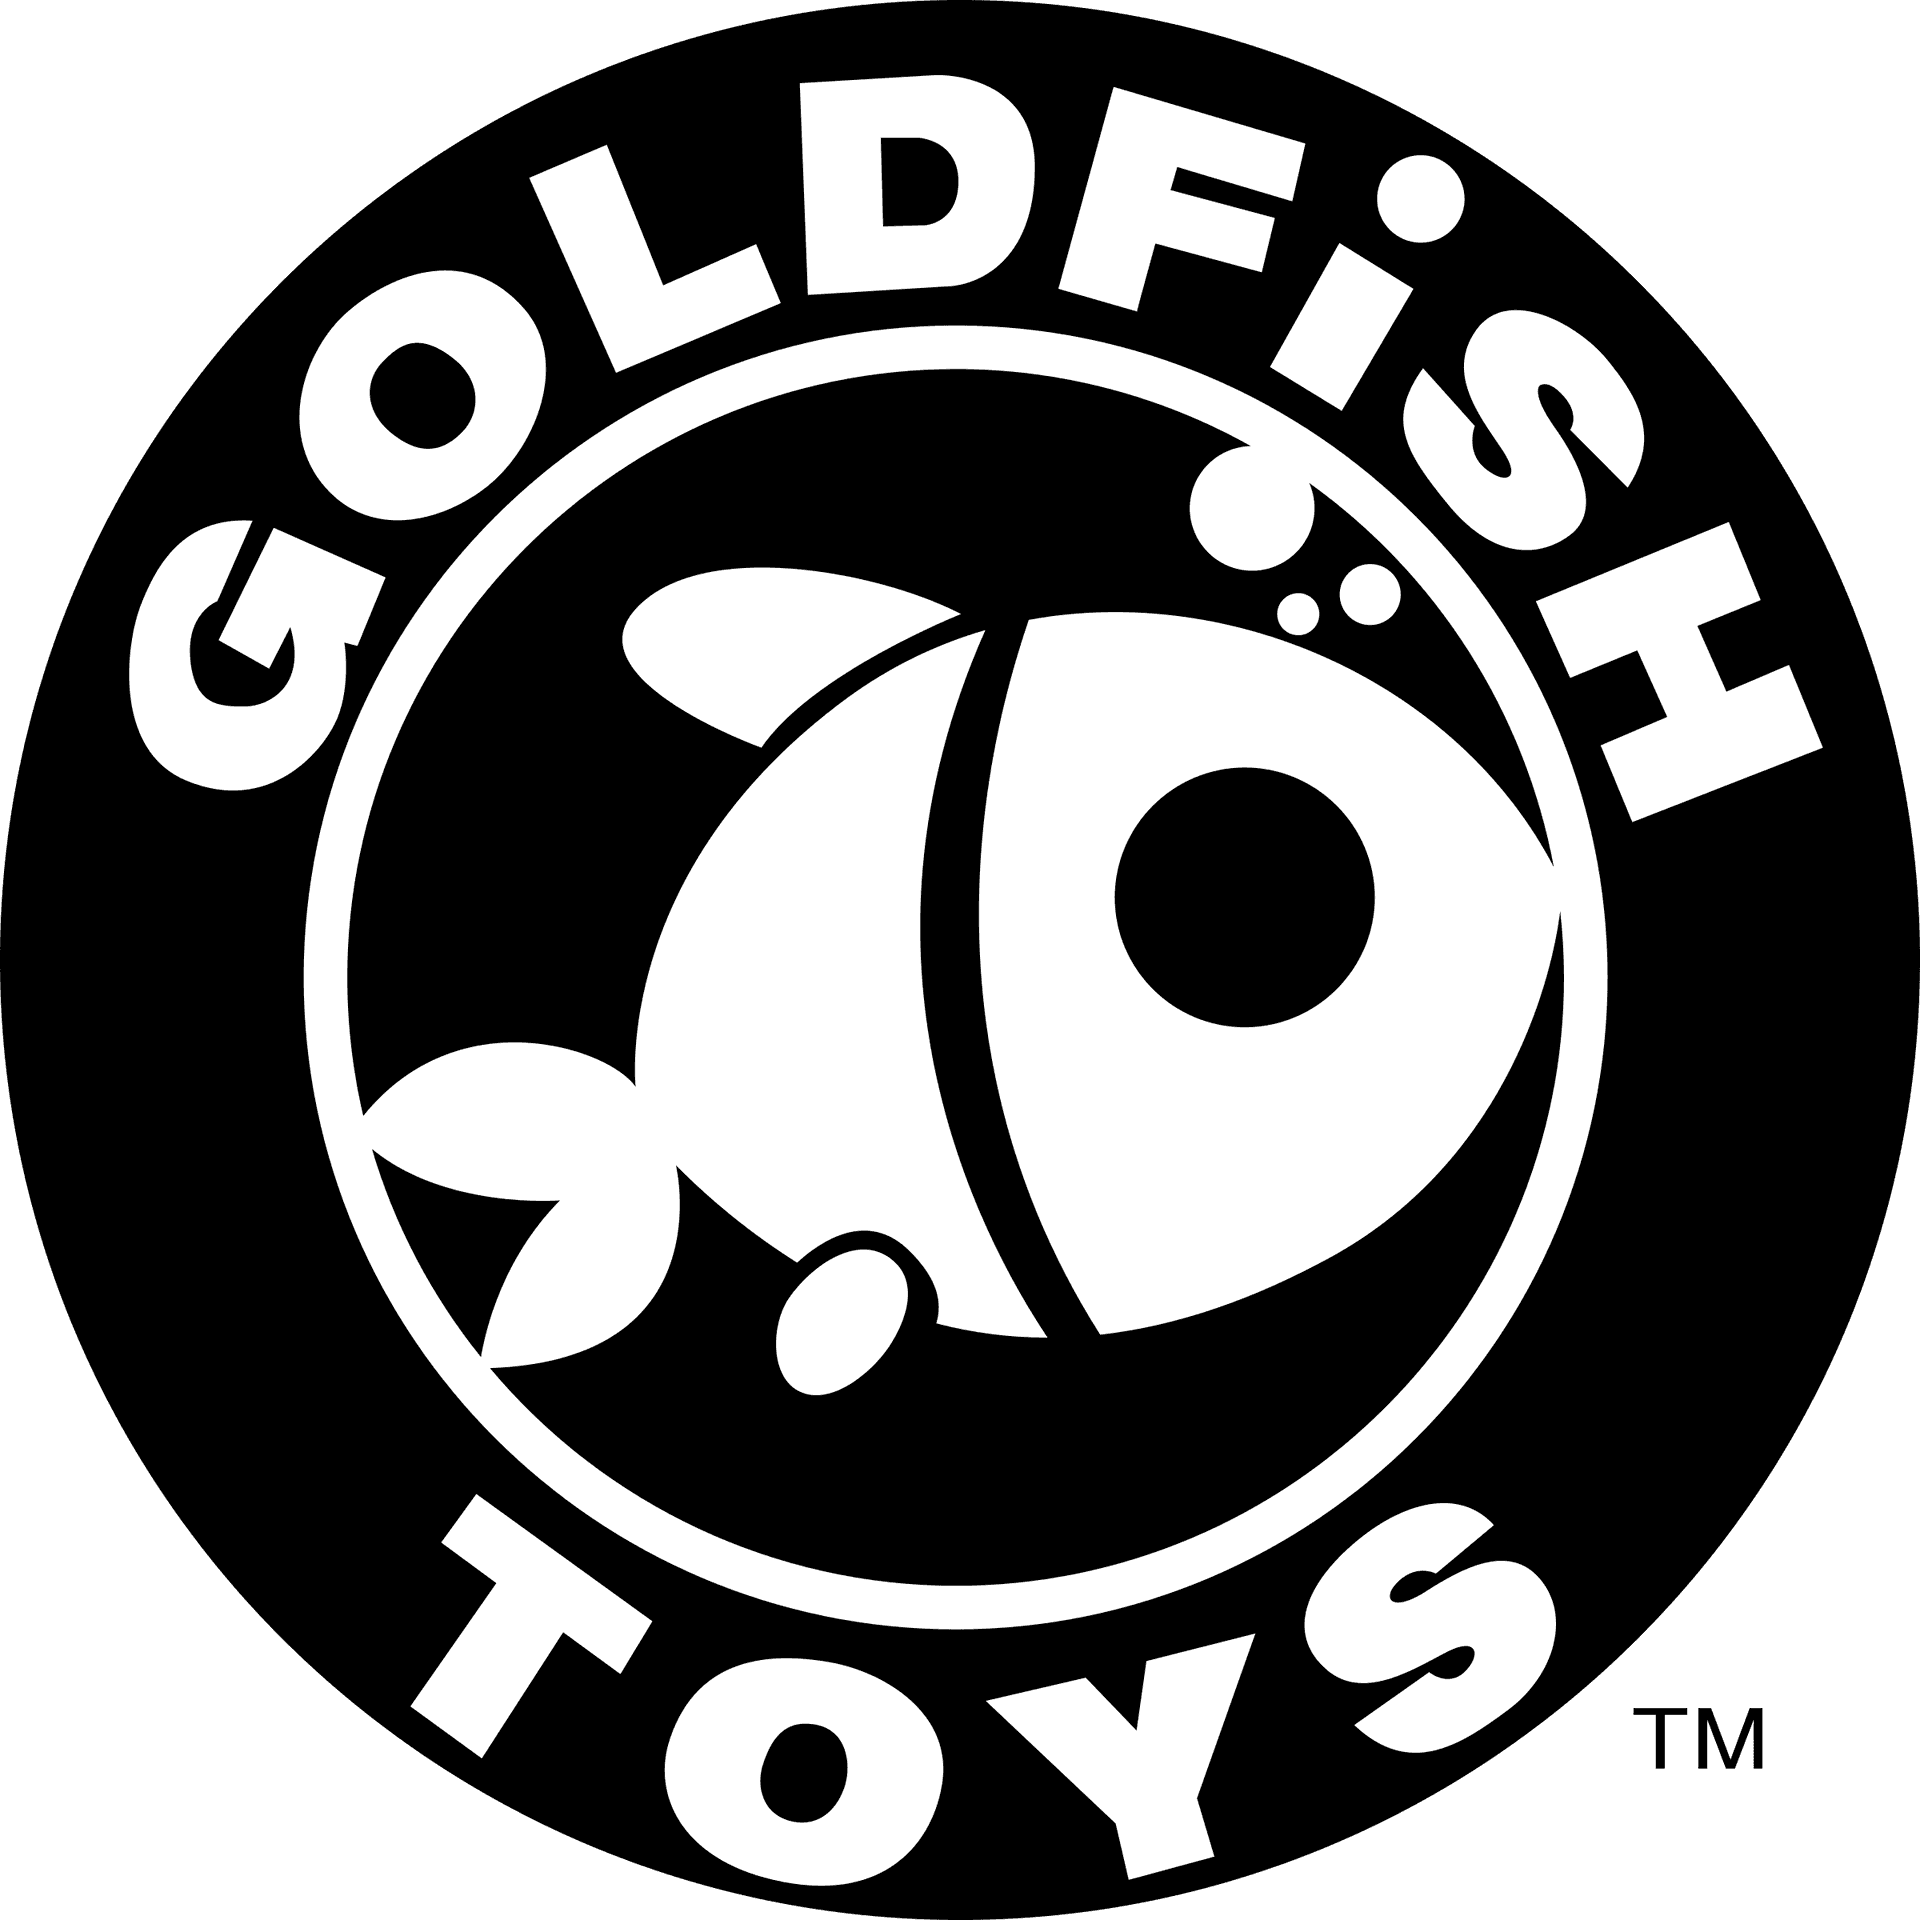 Goldfish Toys Logo PNG